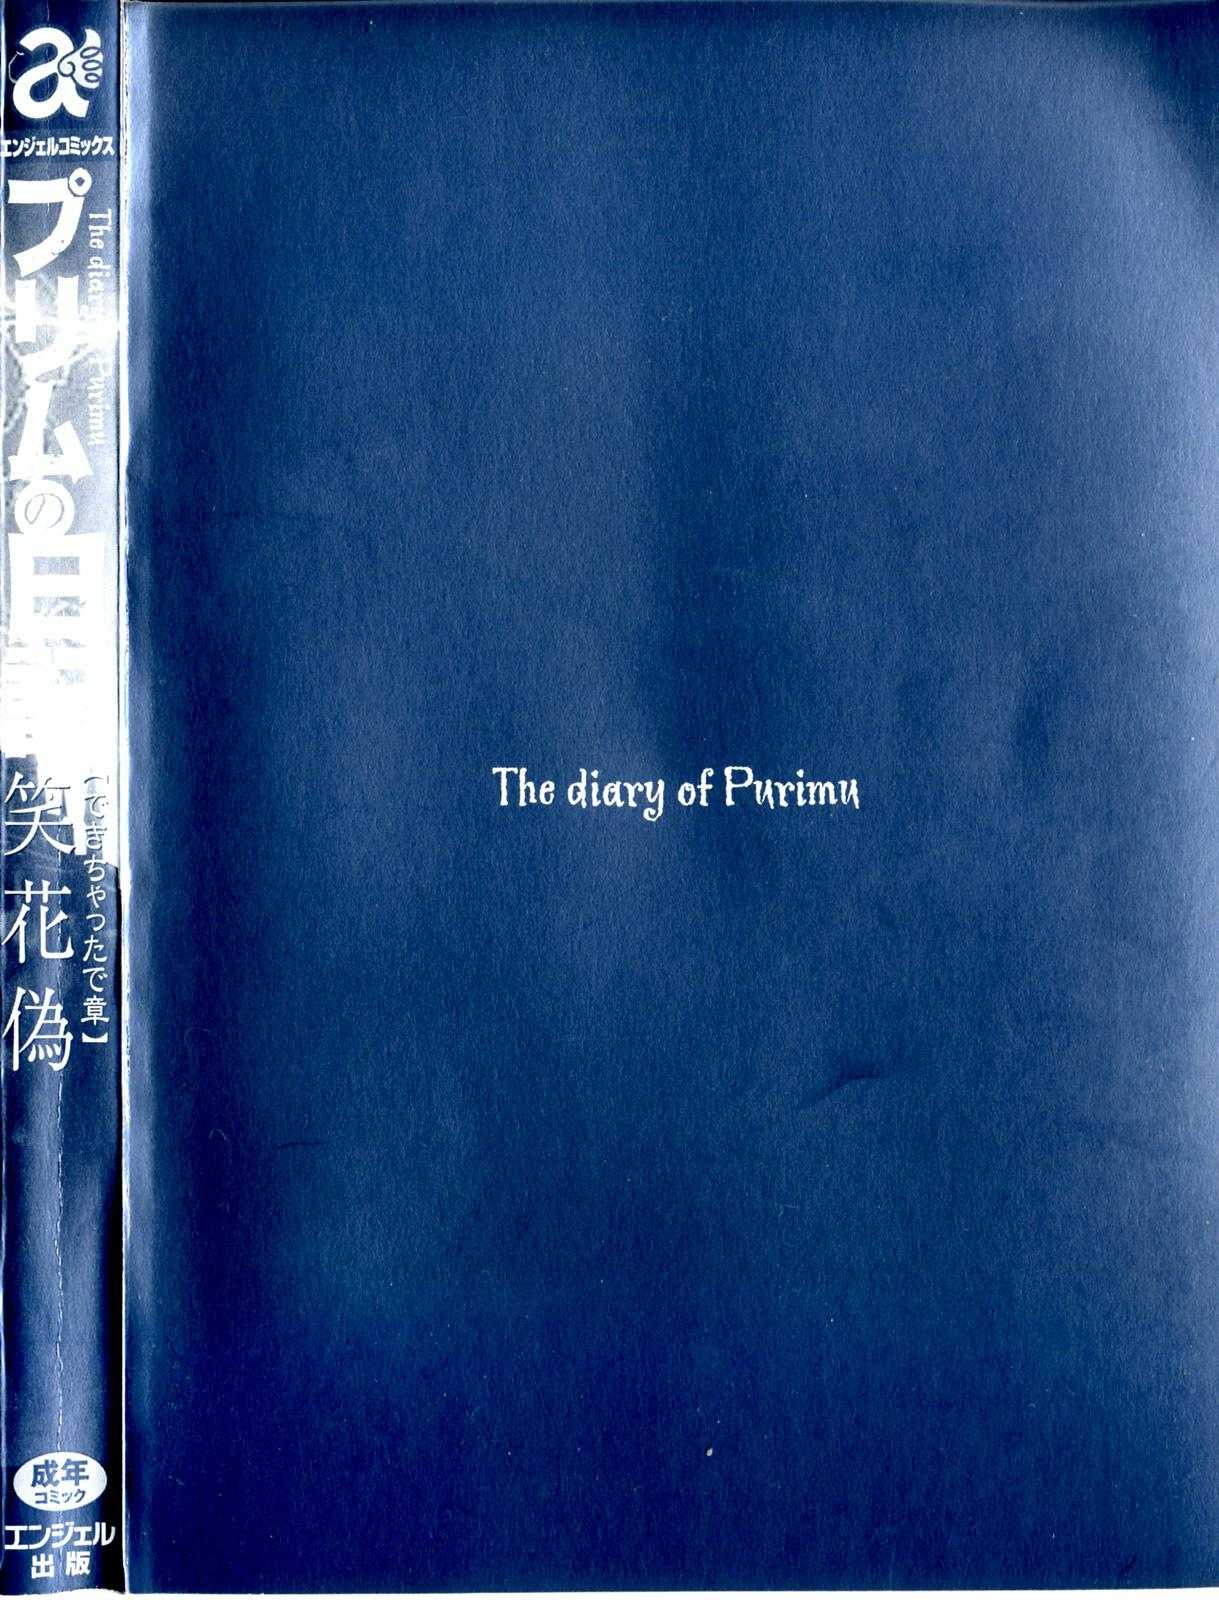 [Nico Pun Nise] Purimu no Nikki (The Diary Of Purimu)[El Diario de Purimo] Vol. 2 (Spanish] 